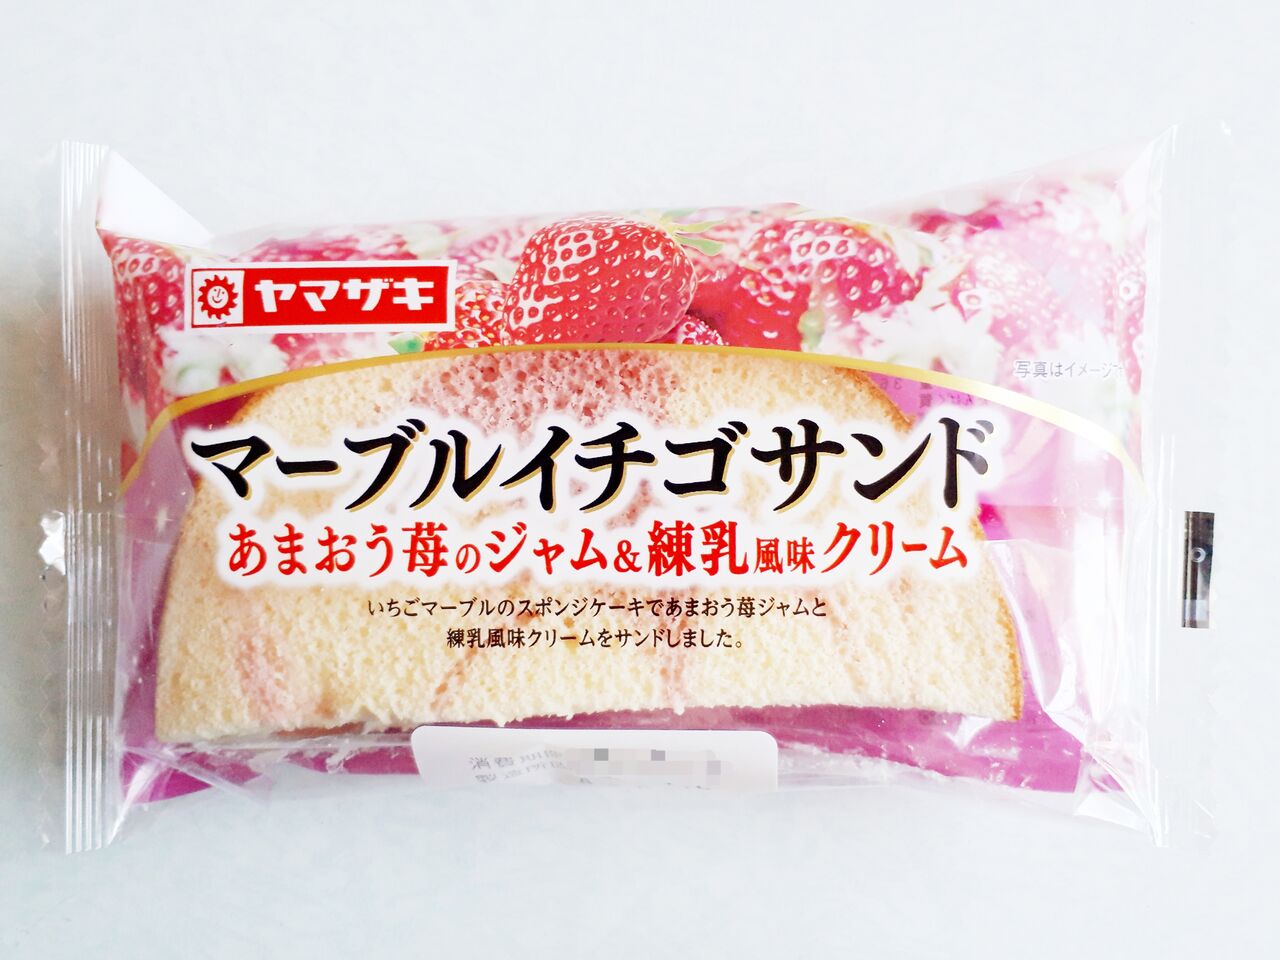 ヤマザキ マーブルイチゴサンド あまおう苺のジャム 練乳風味クリーム パン食べたよ